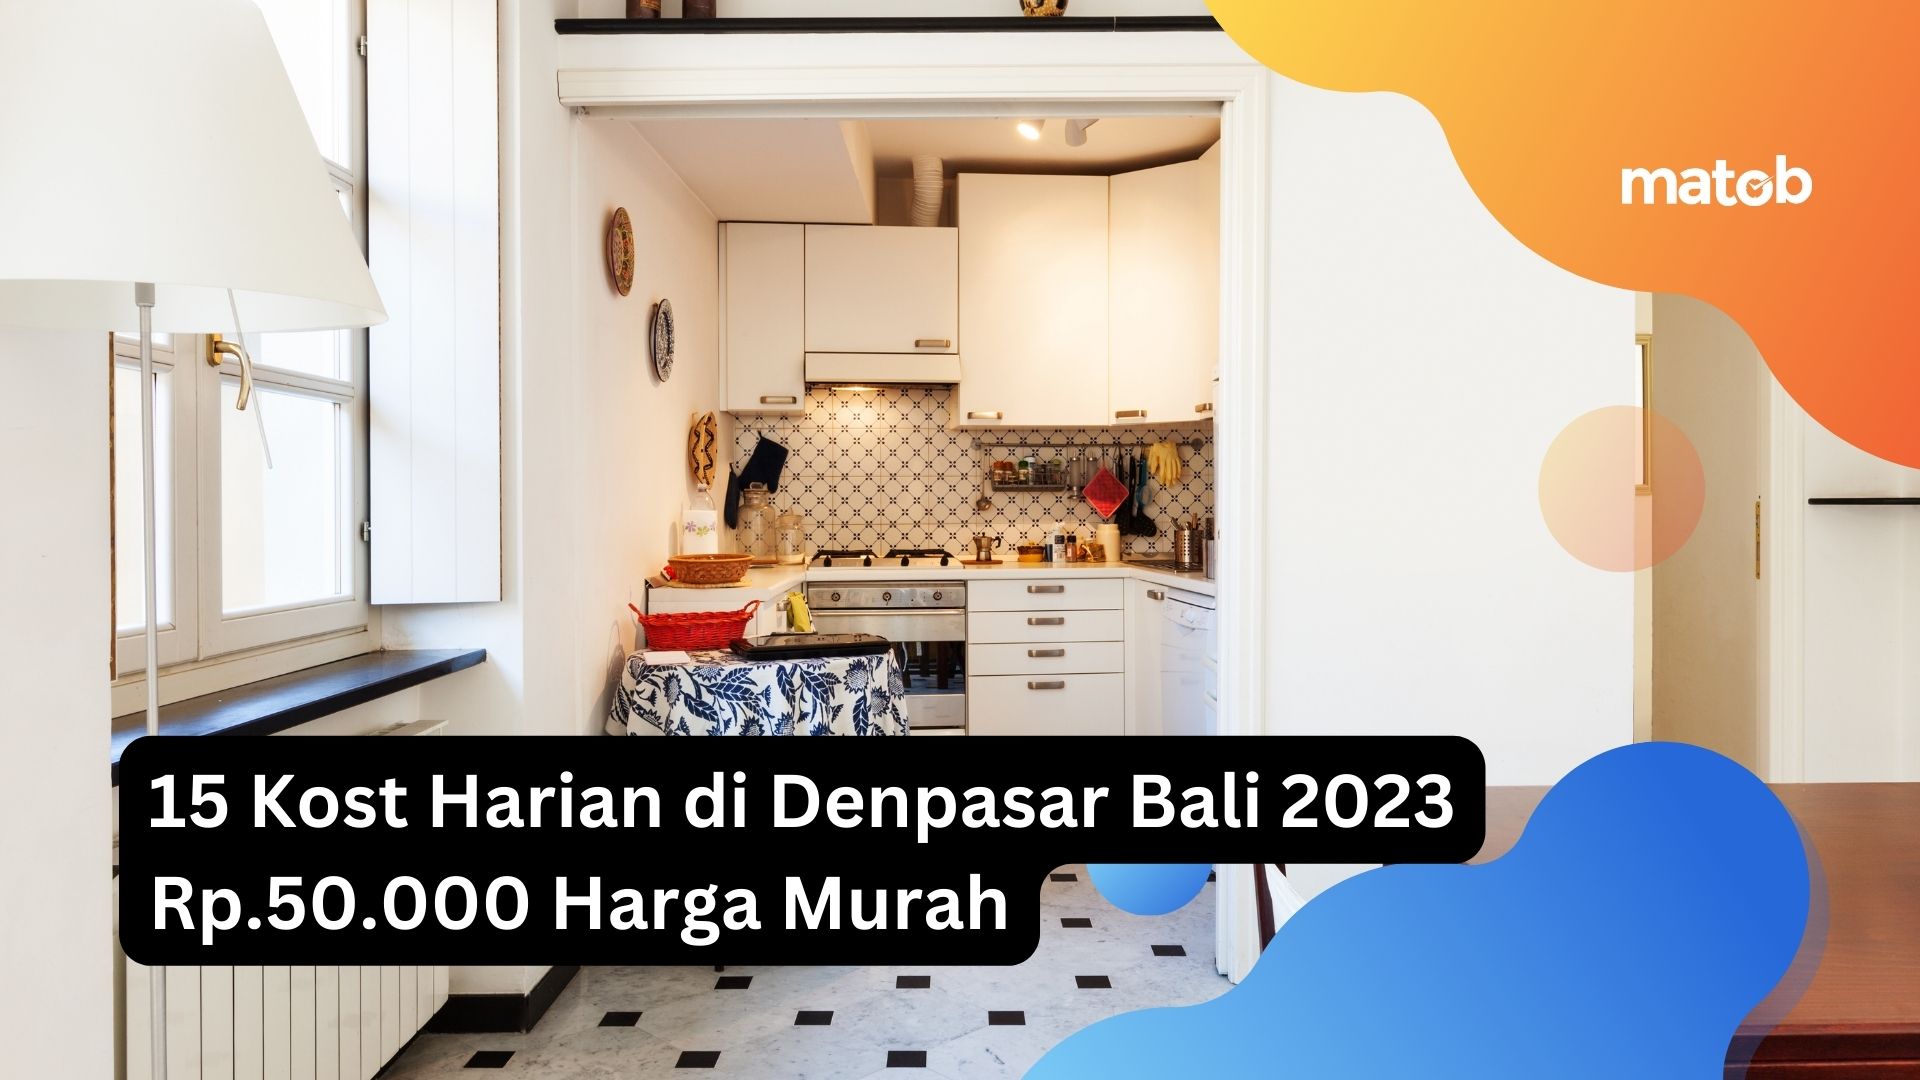 15 Kost Harian di Denpasar Bali 2023 Rp.50.000 Harga Murah